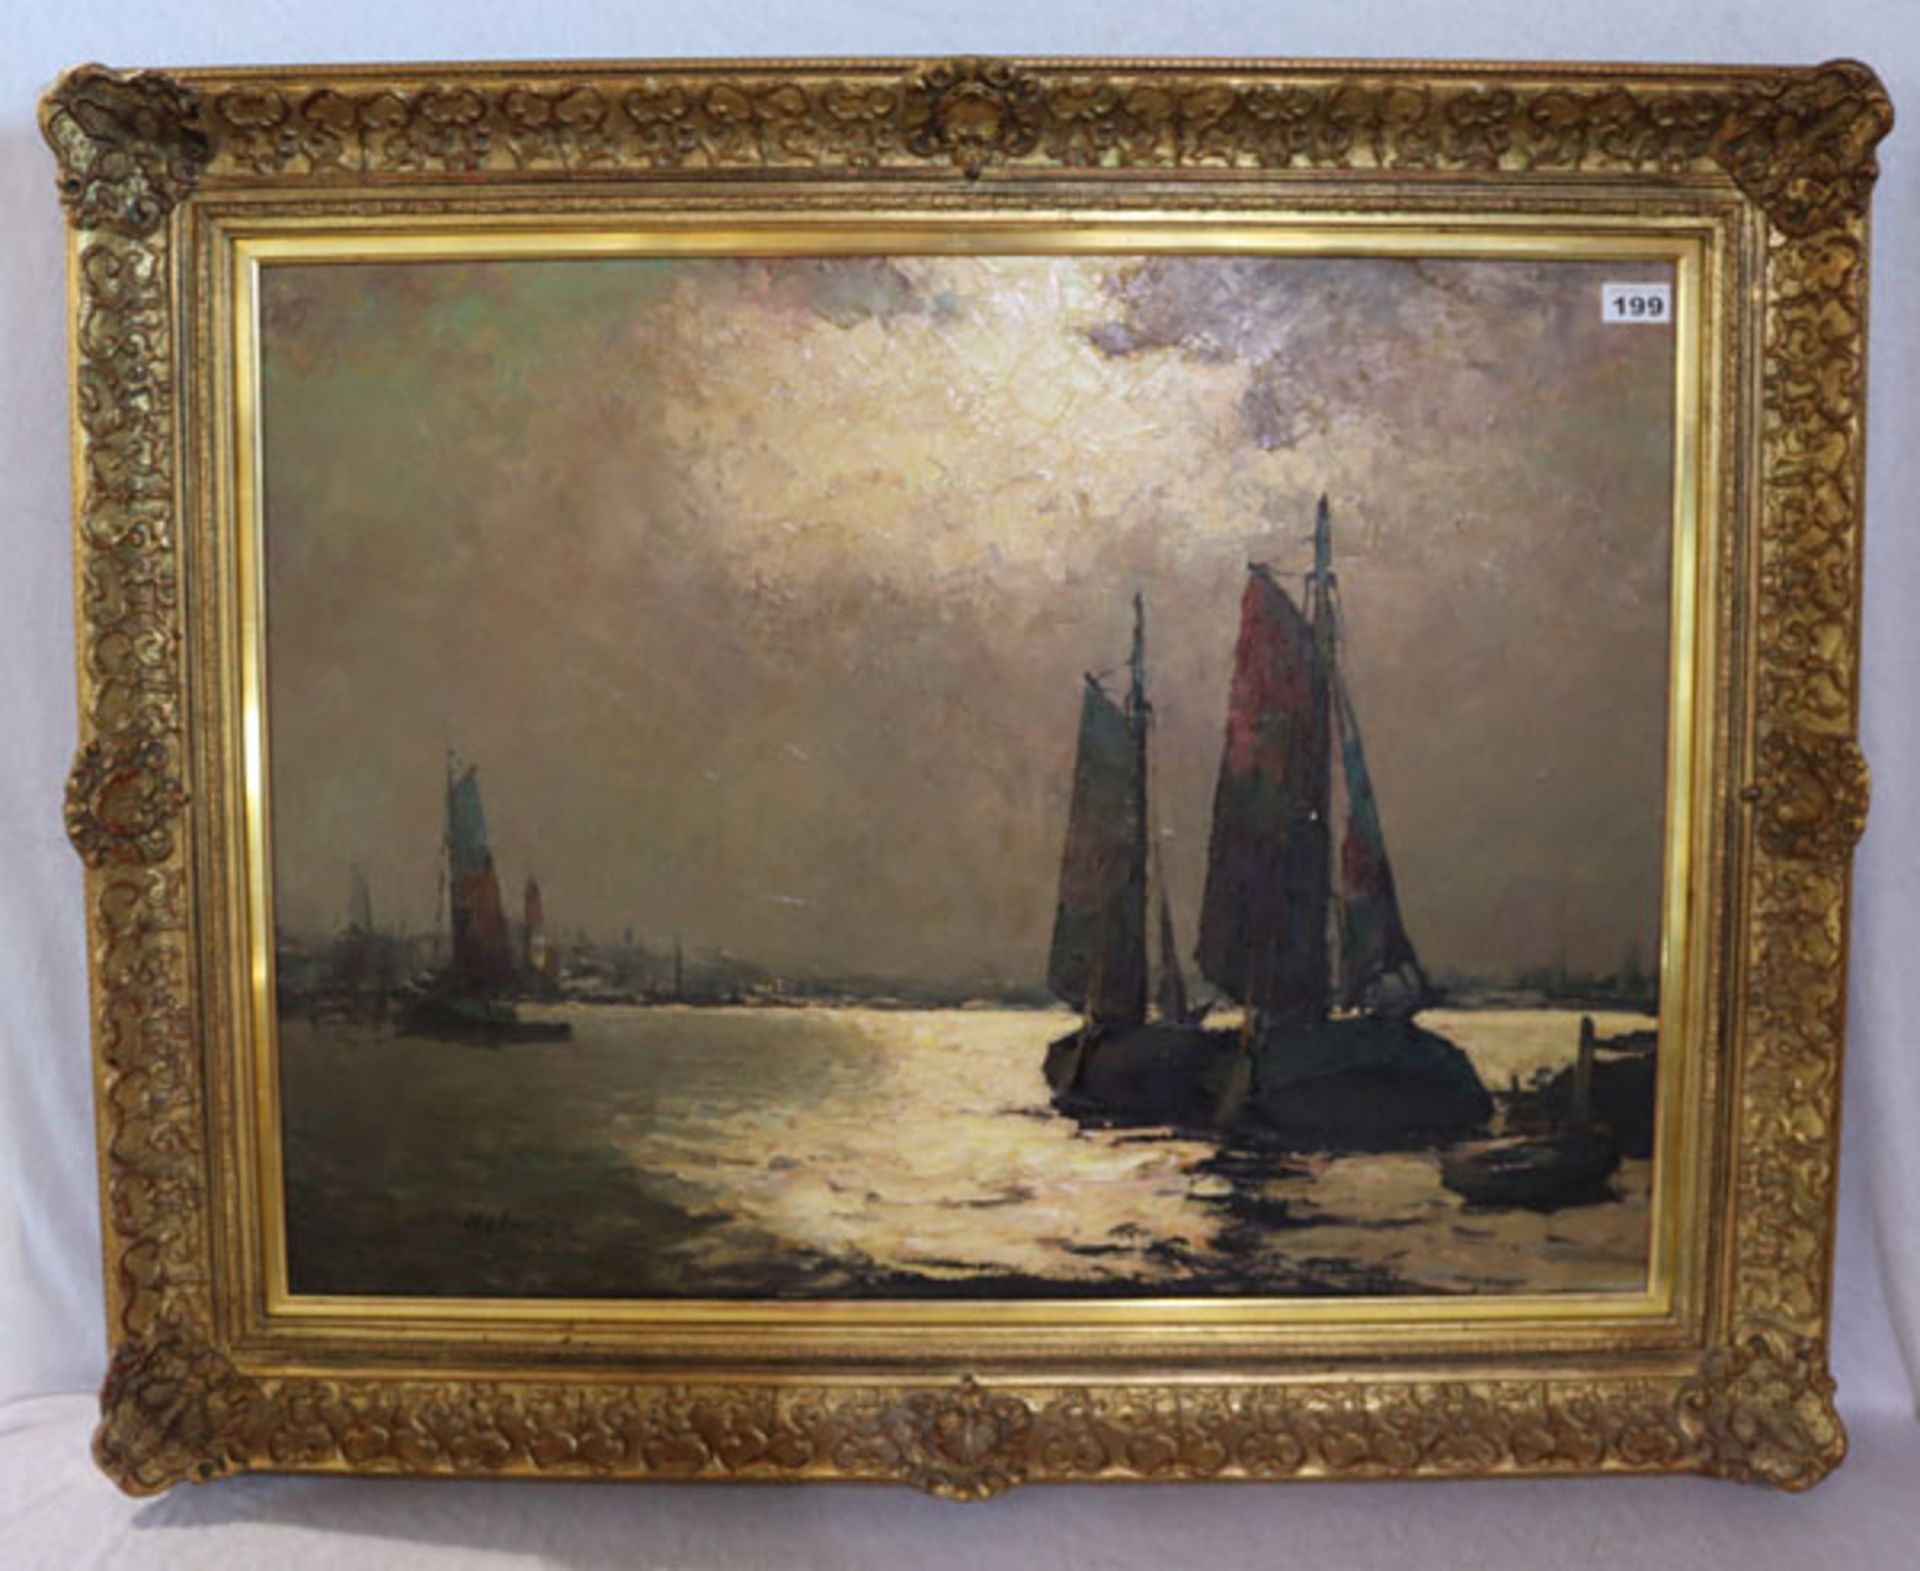 Gemälde ÖL/LW 'Segelboote in Abendstimmung', undeutlich signiert Kolo ..., gerahmt, incl. Rahmen